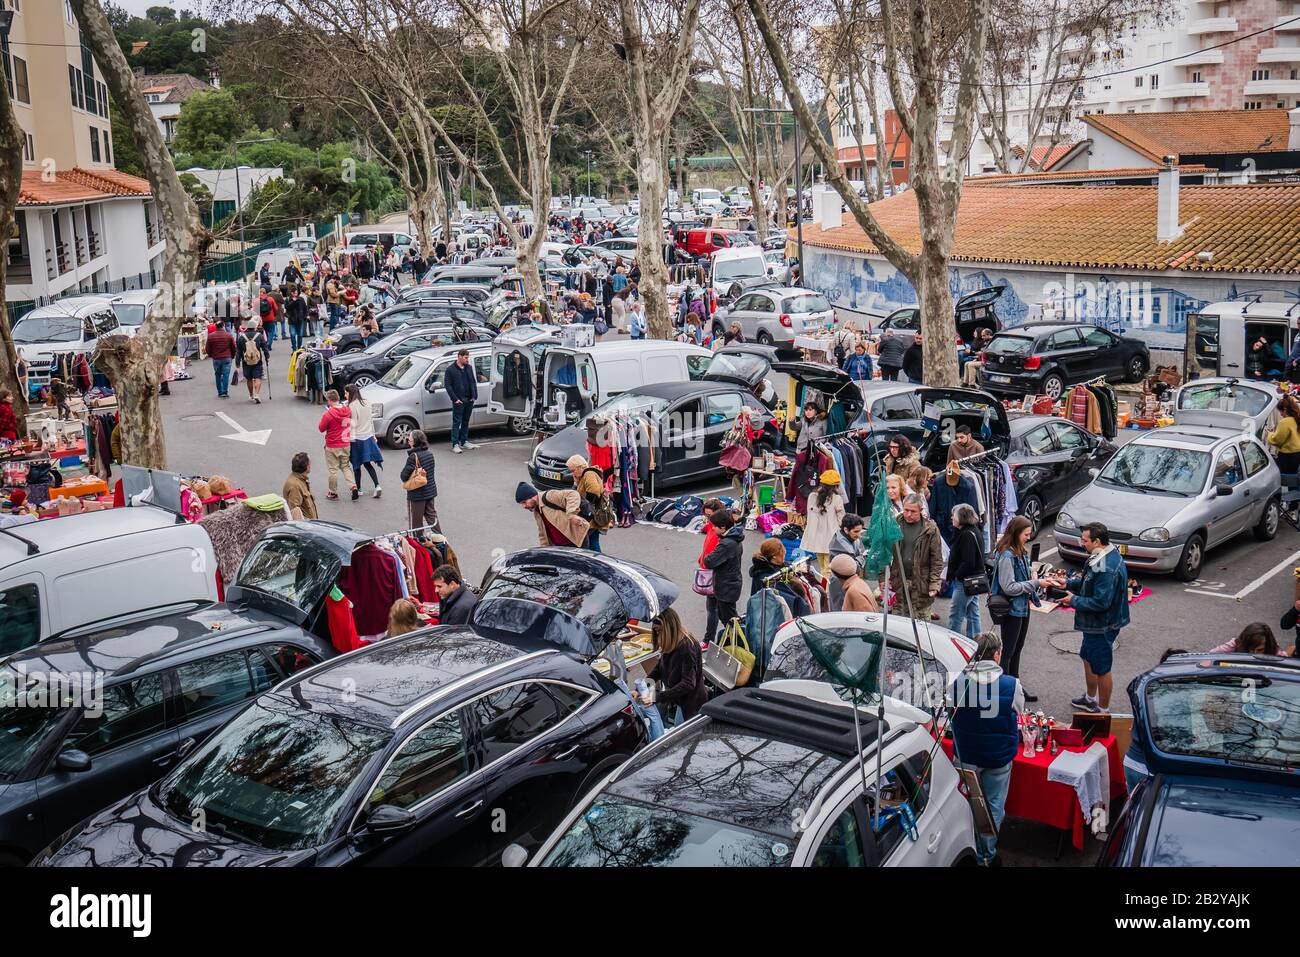 Ein lokaler Flohmarkt, auf dem die Menschen zufällige Gegenstände aus dem hinteren Teil ihrer Autos auf einem Parkplatz in der Nähe von Mercado da Vila in der Stadt Cascais, Portuga, verkaufen Stockfoto